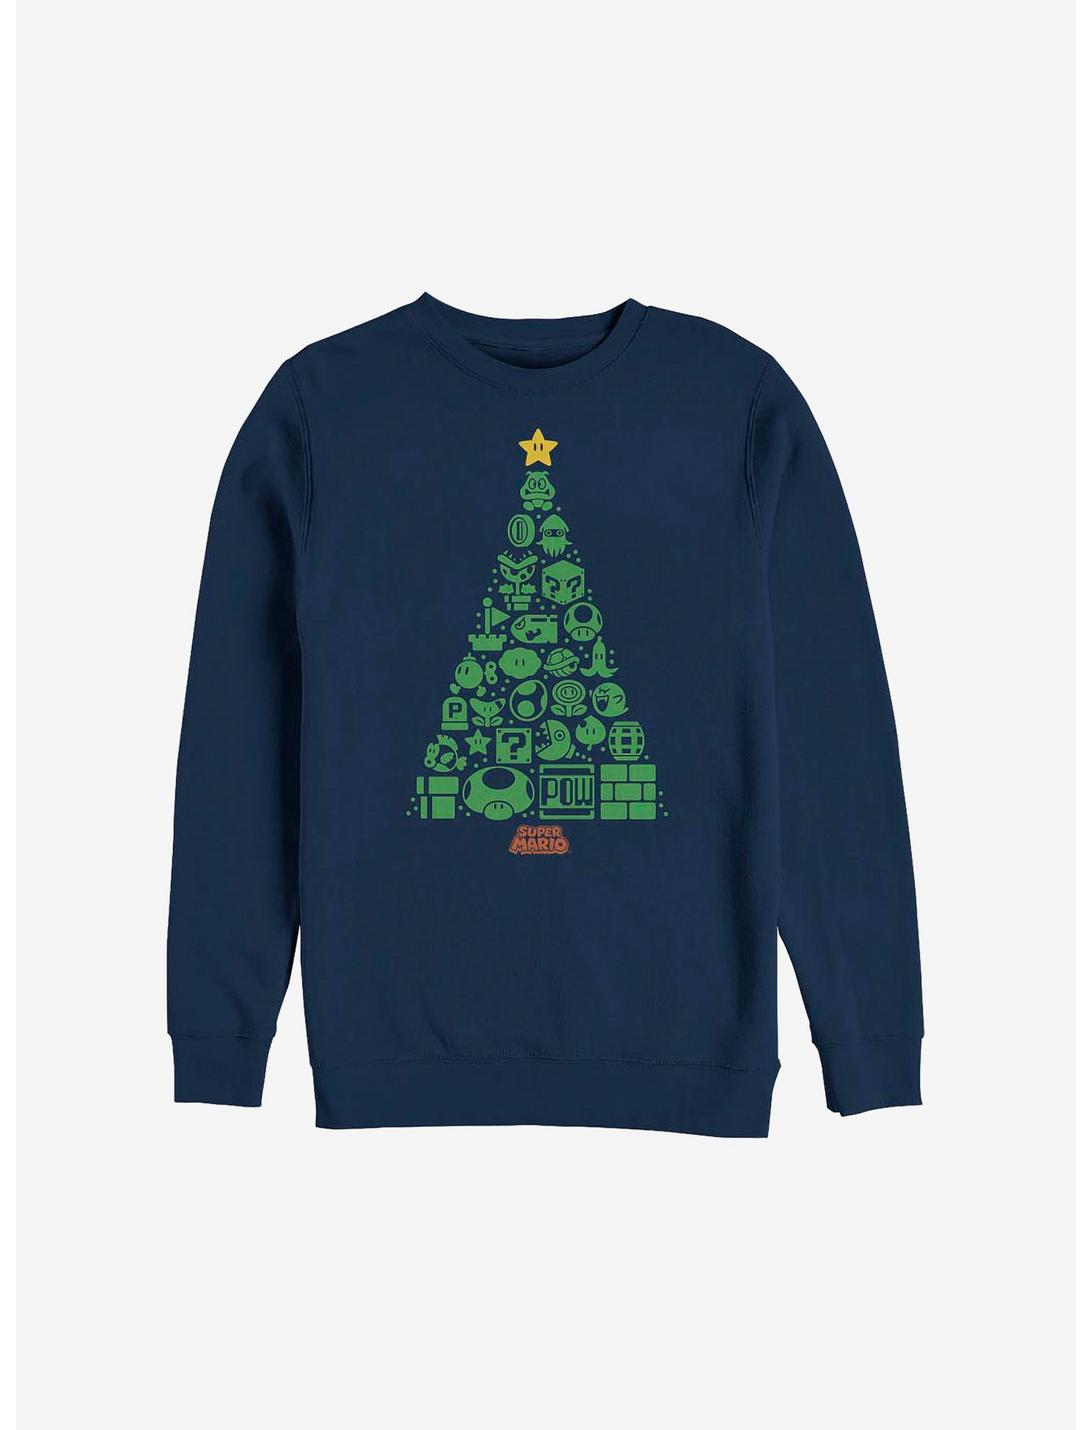 Super Mario Trees A Crowd Holiday Sweatshirt, NAVY, hi-res